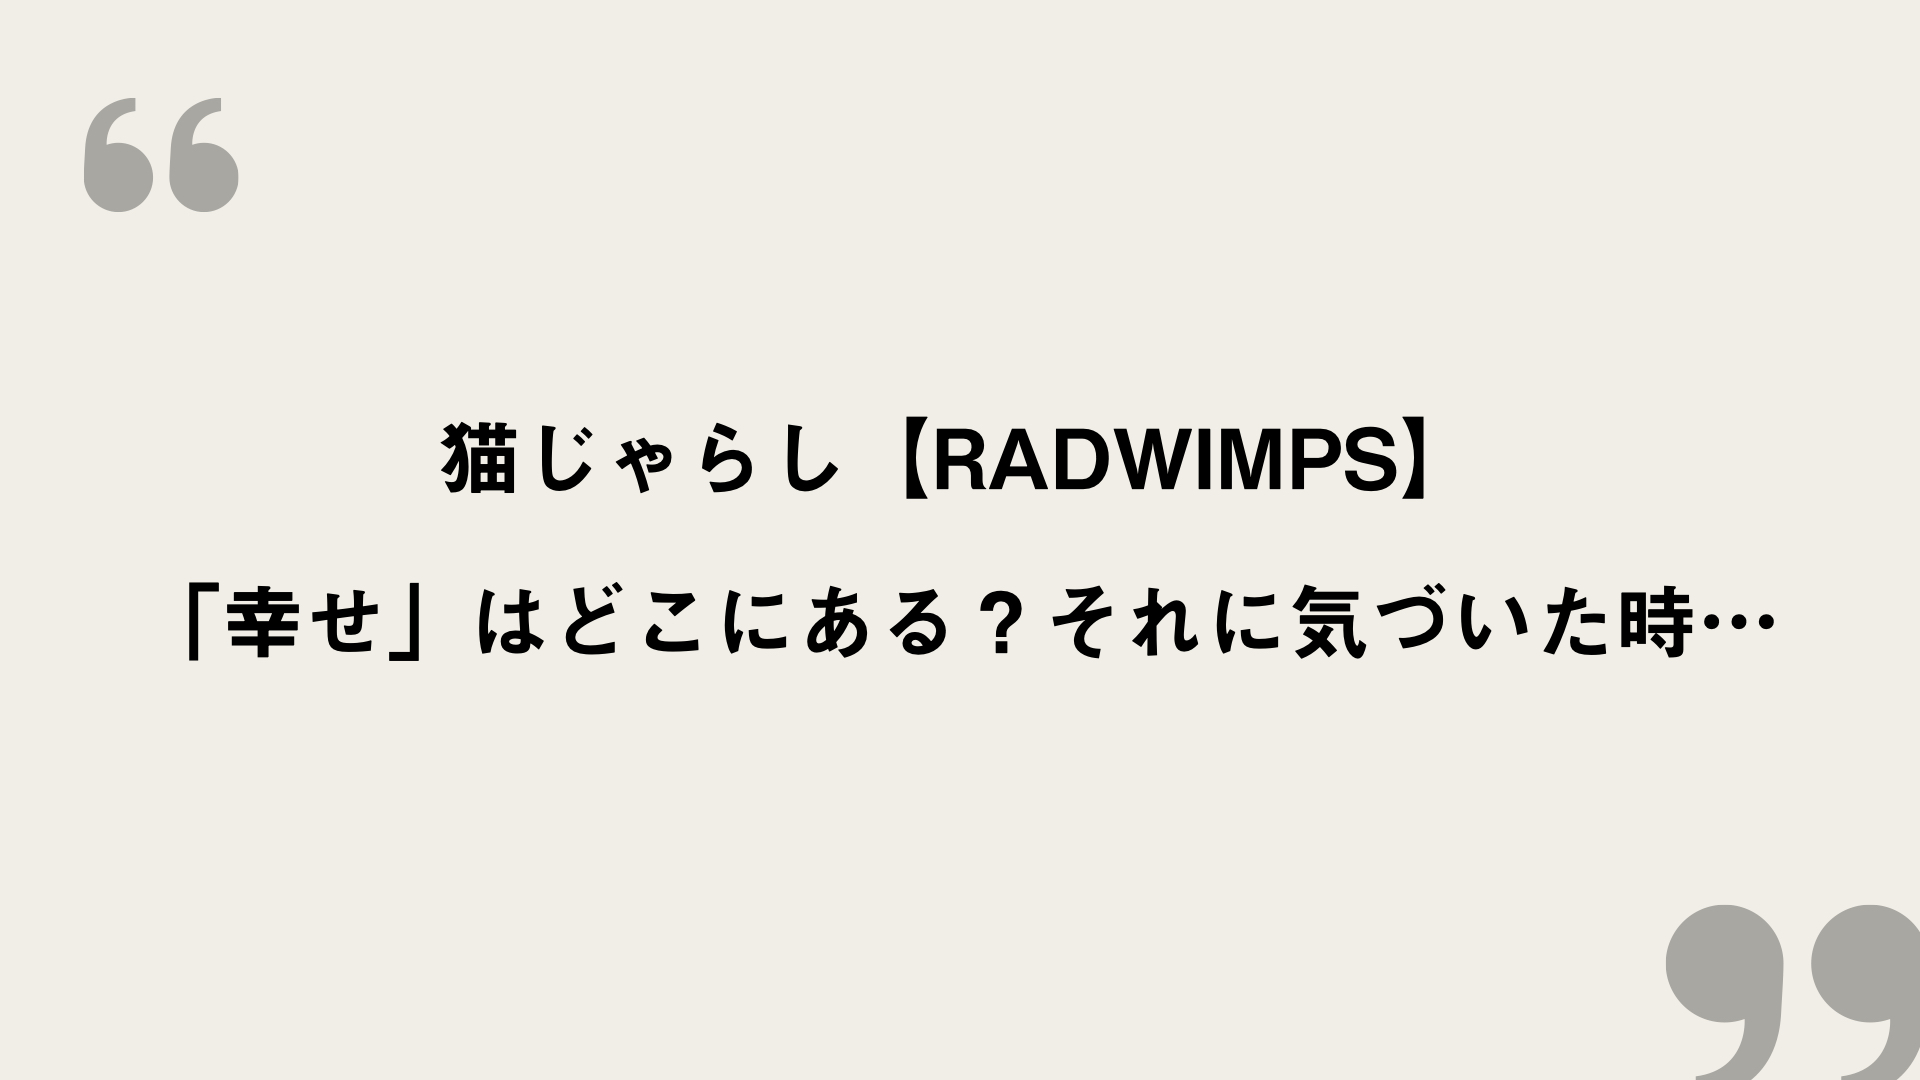 猫じゃらし Radwimps 歌詞の意味考察 幸せ はどこにある それに気づいた時 Framu Media